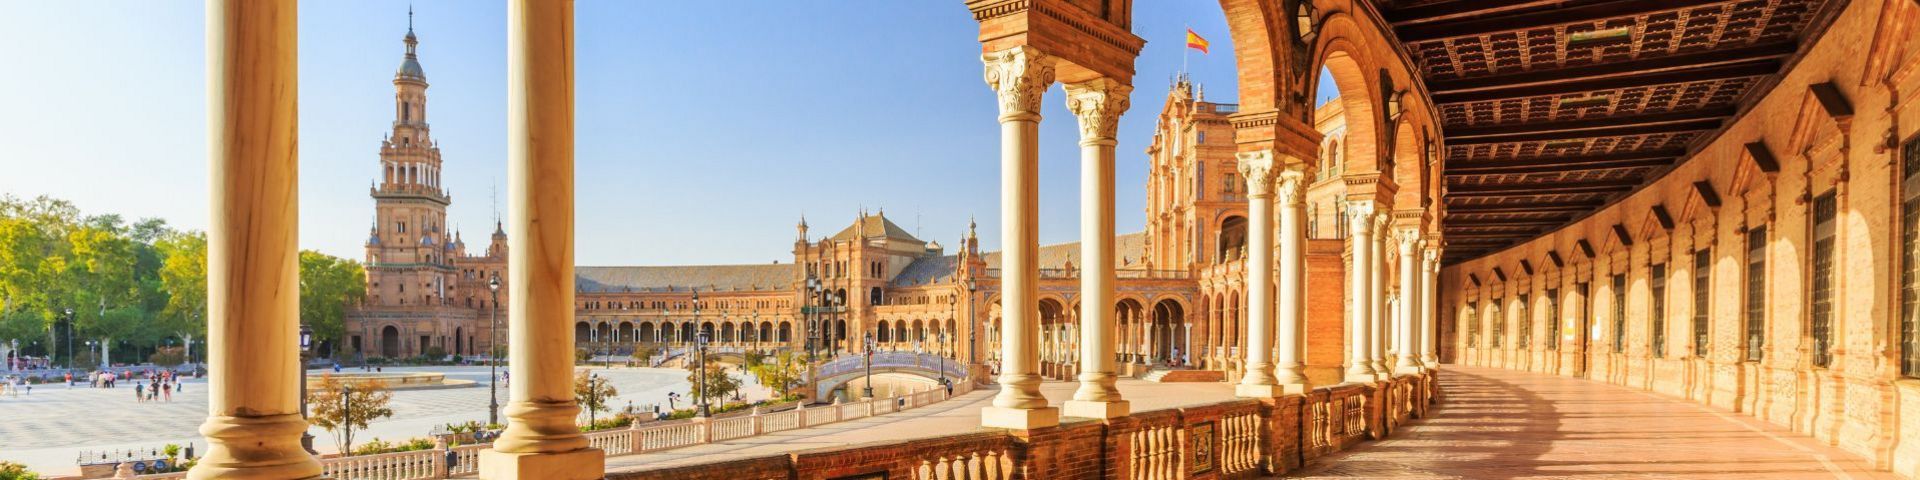 Sevilla auf einer Spanien Reise mit sz-Reisen